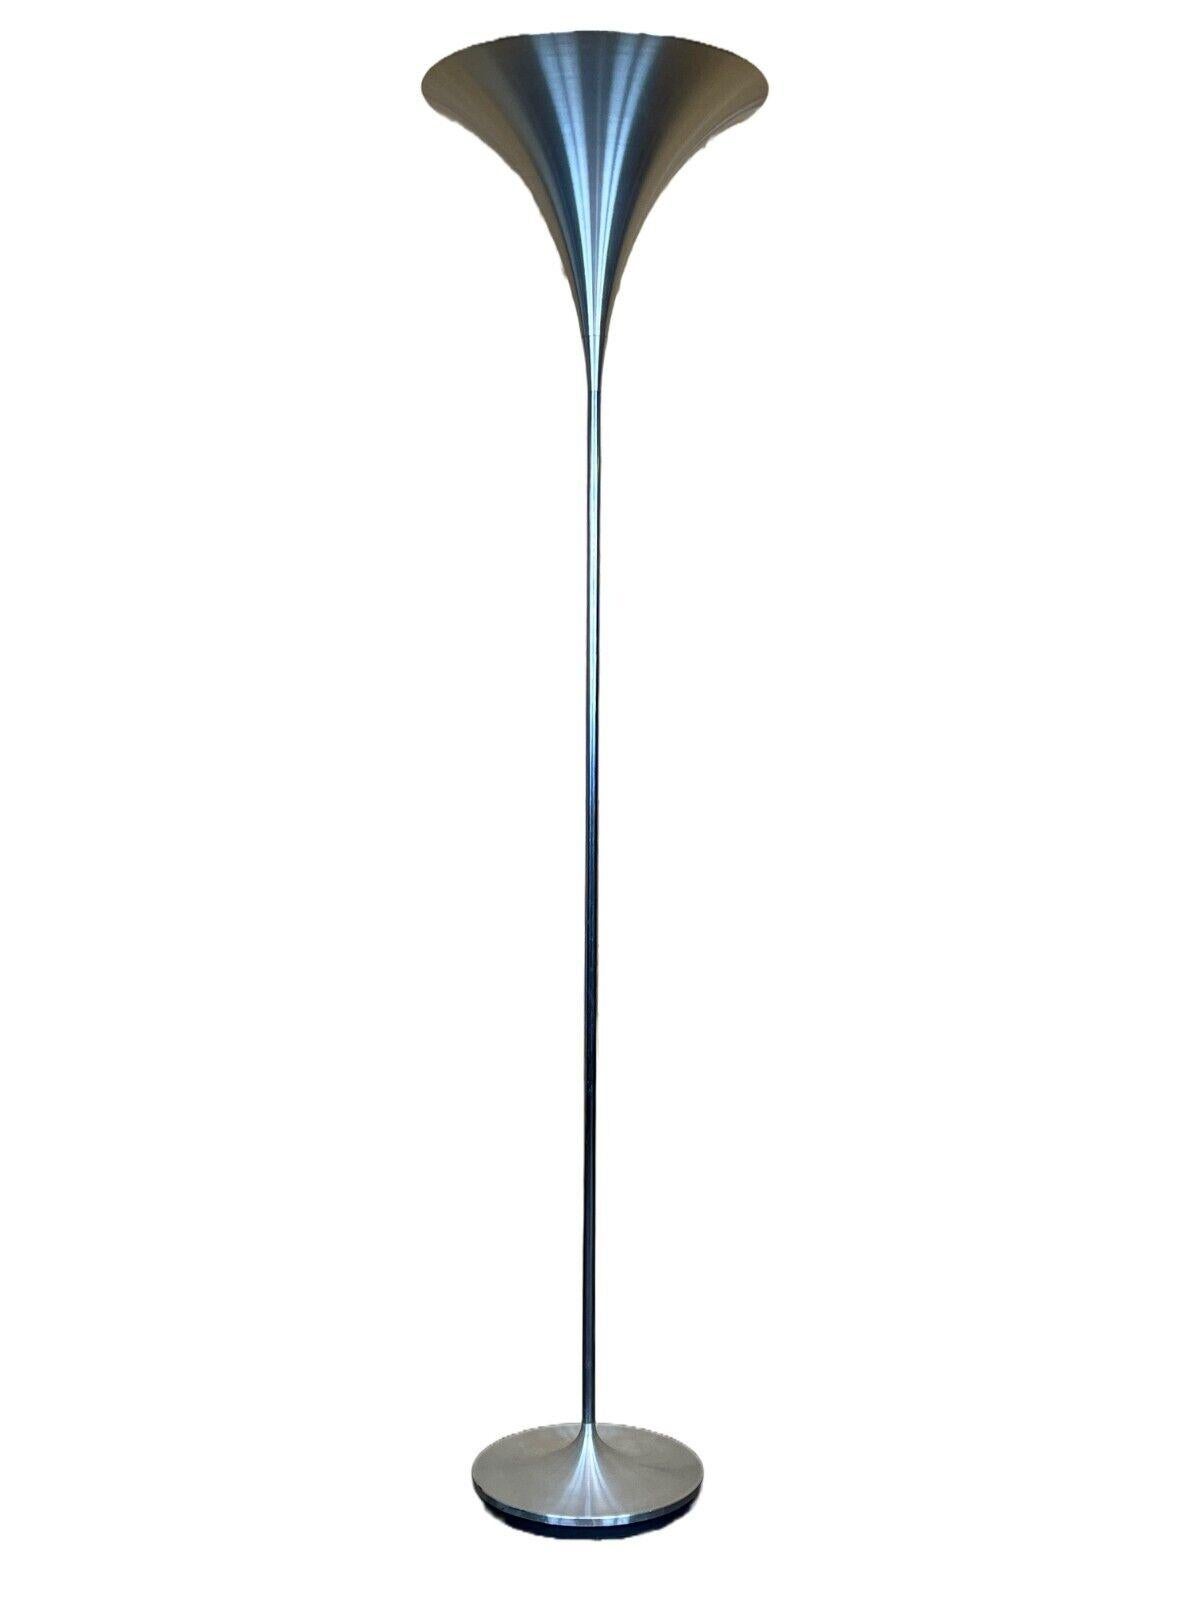 60s 70s Lampes lampadaires aluminium Doria lampes space age design.

Objet : lampadaire

Fabricant : Doria

Condit : bon

Âge : environ 1960-1970

Dimensions :

Diamètre = 39cm
Hauteur = 160,5 cm

Autres notes :

Douille E27

Les